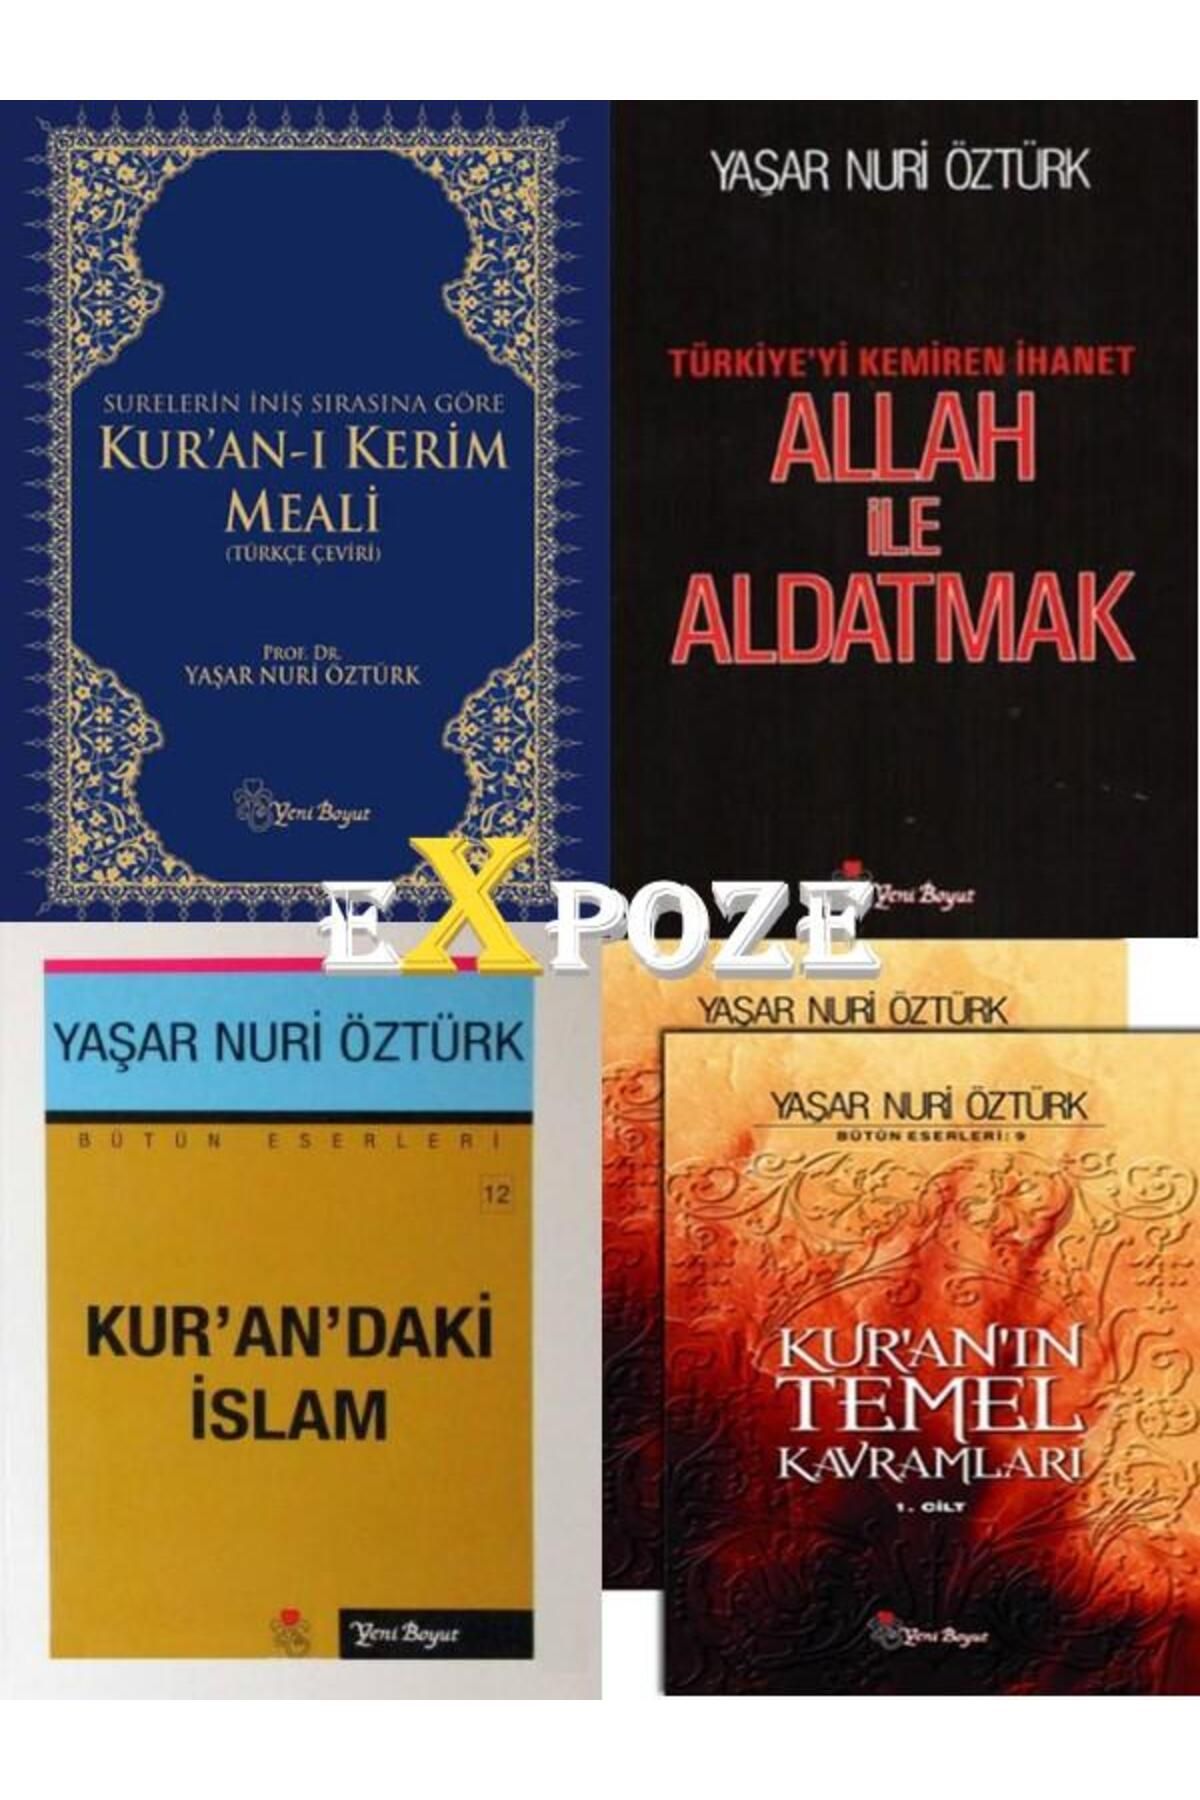 Yeni Boyut Yayınları Yaşar Nuri Öztürk Seti 5 Kitap Kur'an ı Kerim Meali, Allah ile Aldatmak, Kur’an’daki İslam